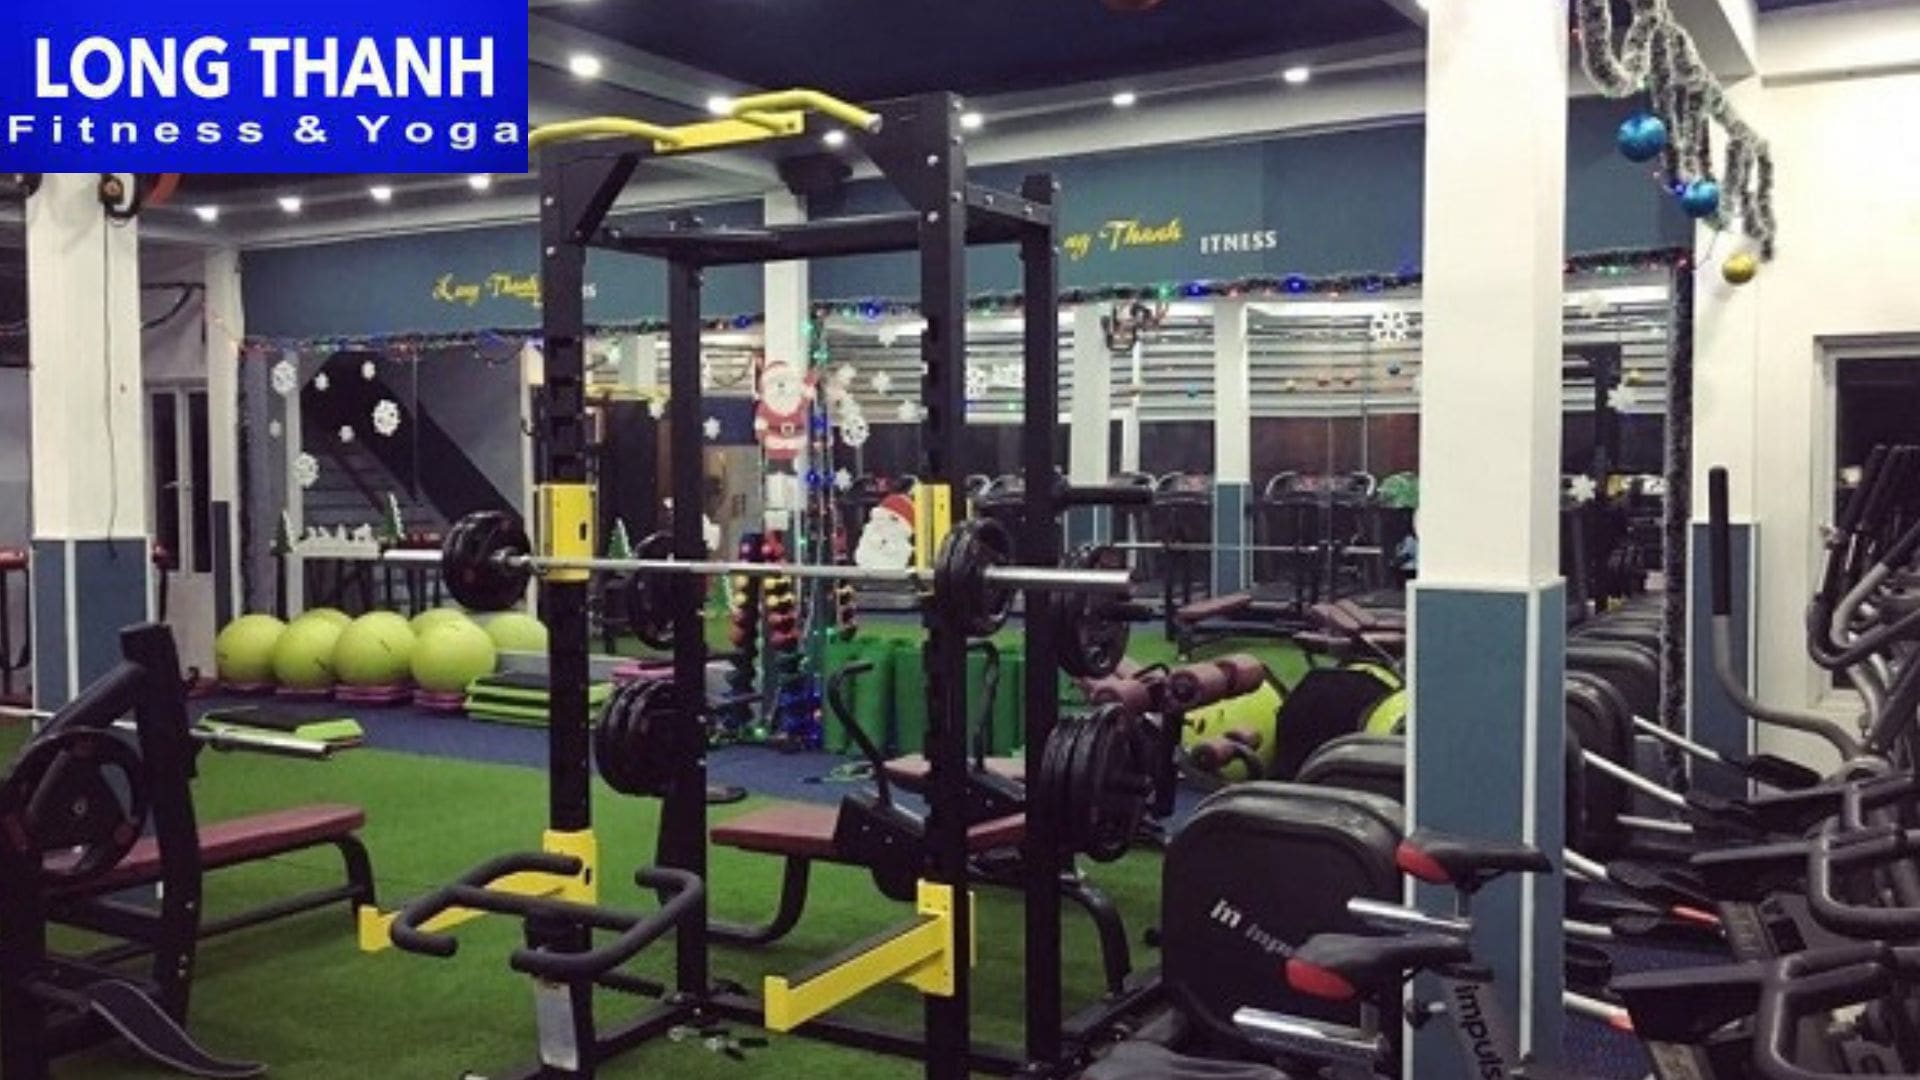 Long Thành Fitness - Phòng tập gym gần đây tốt nhất ở Đà Nẵng